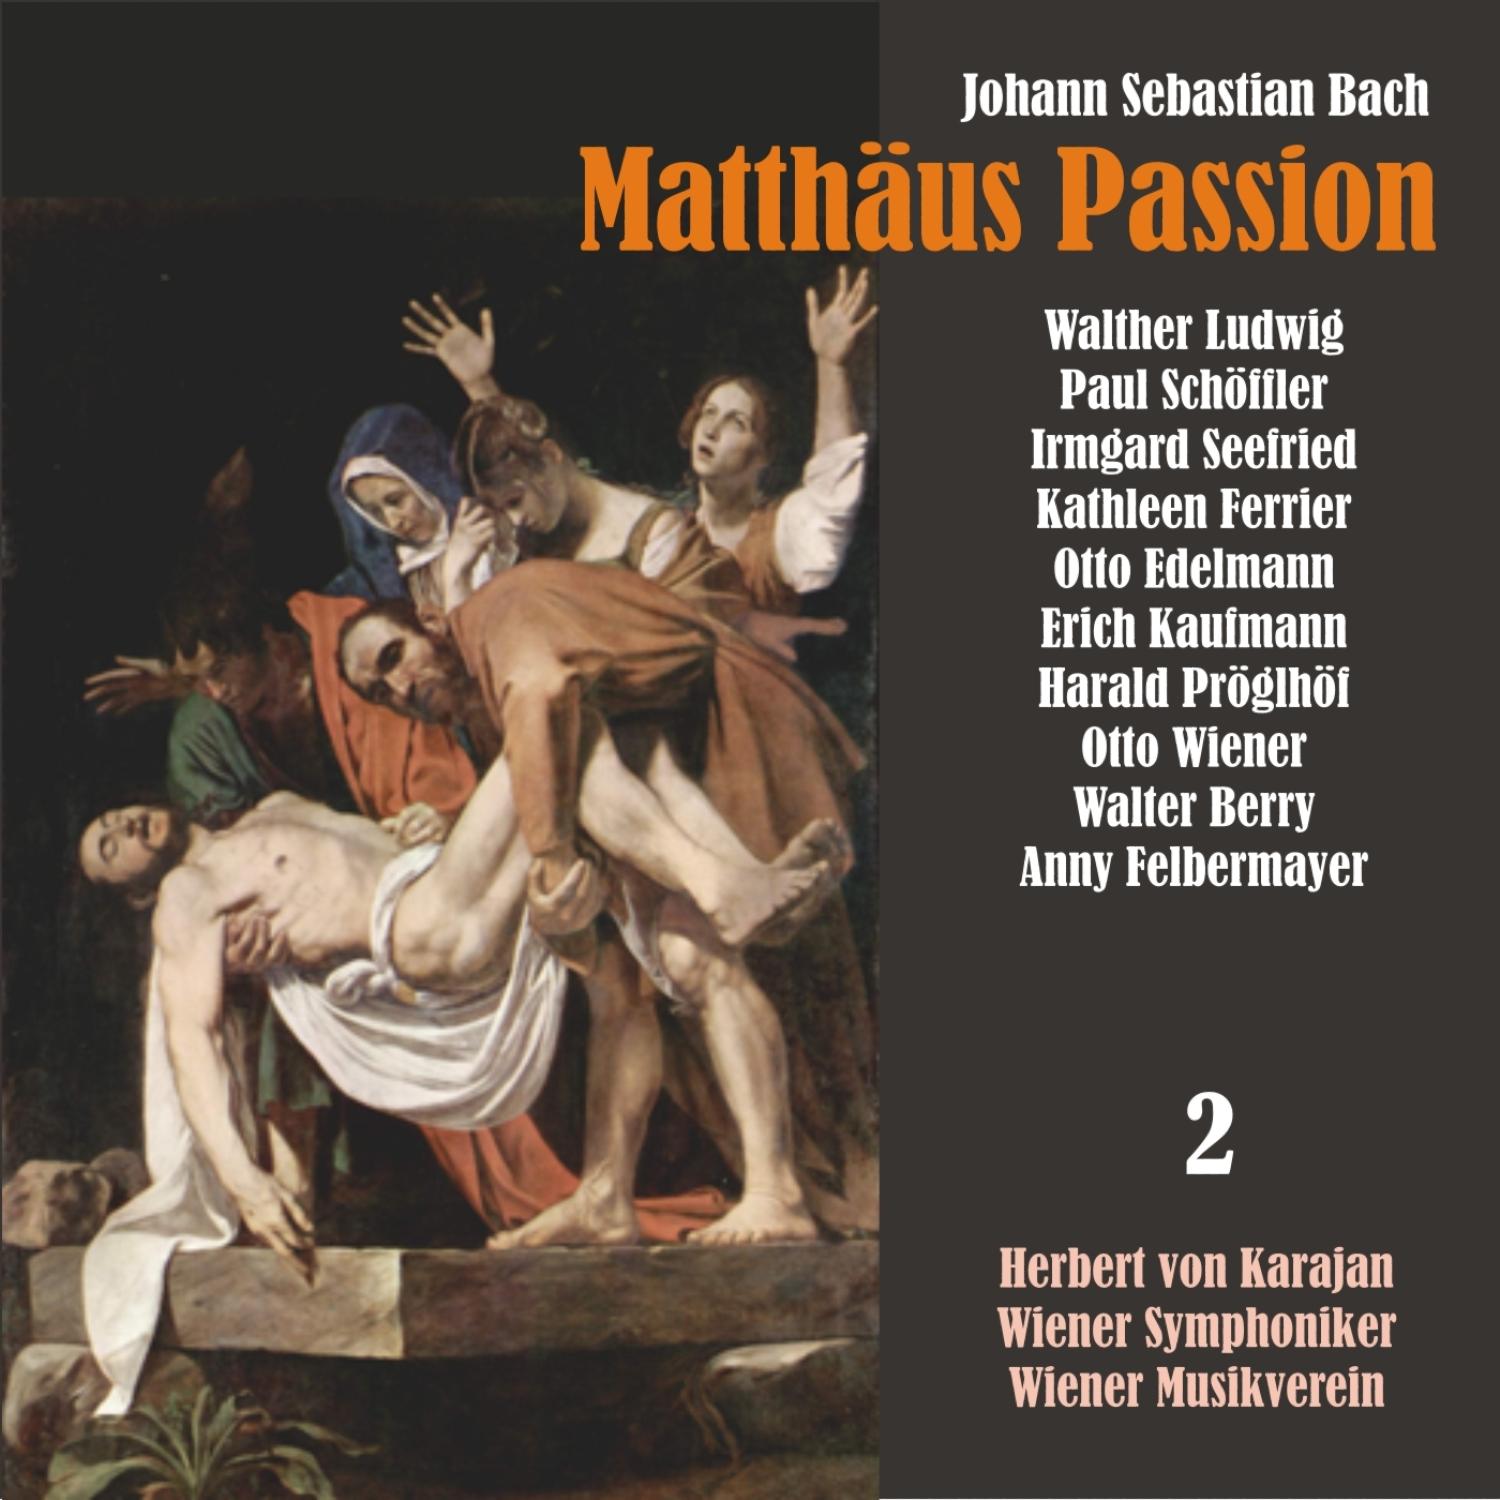 Matthäus Passion, BWV 244: "Was mein Gott will, das gscheh allzeit"